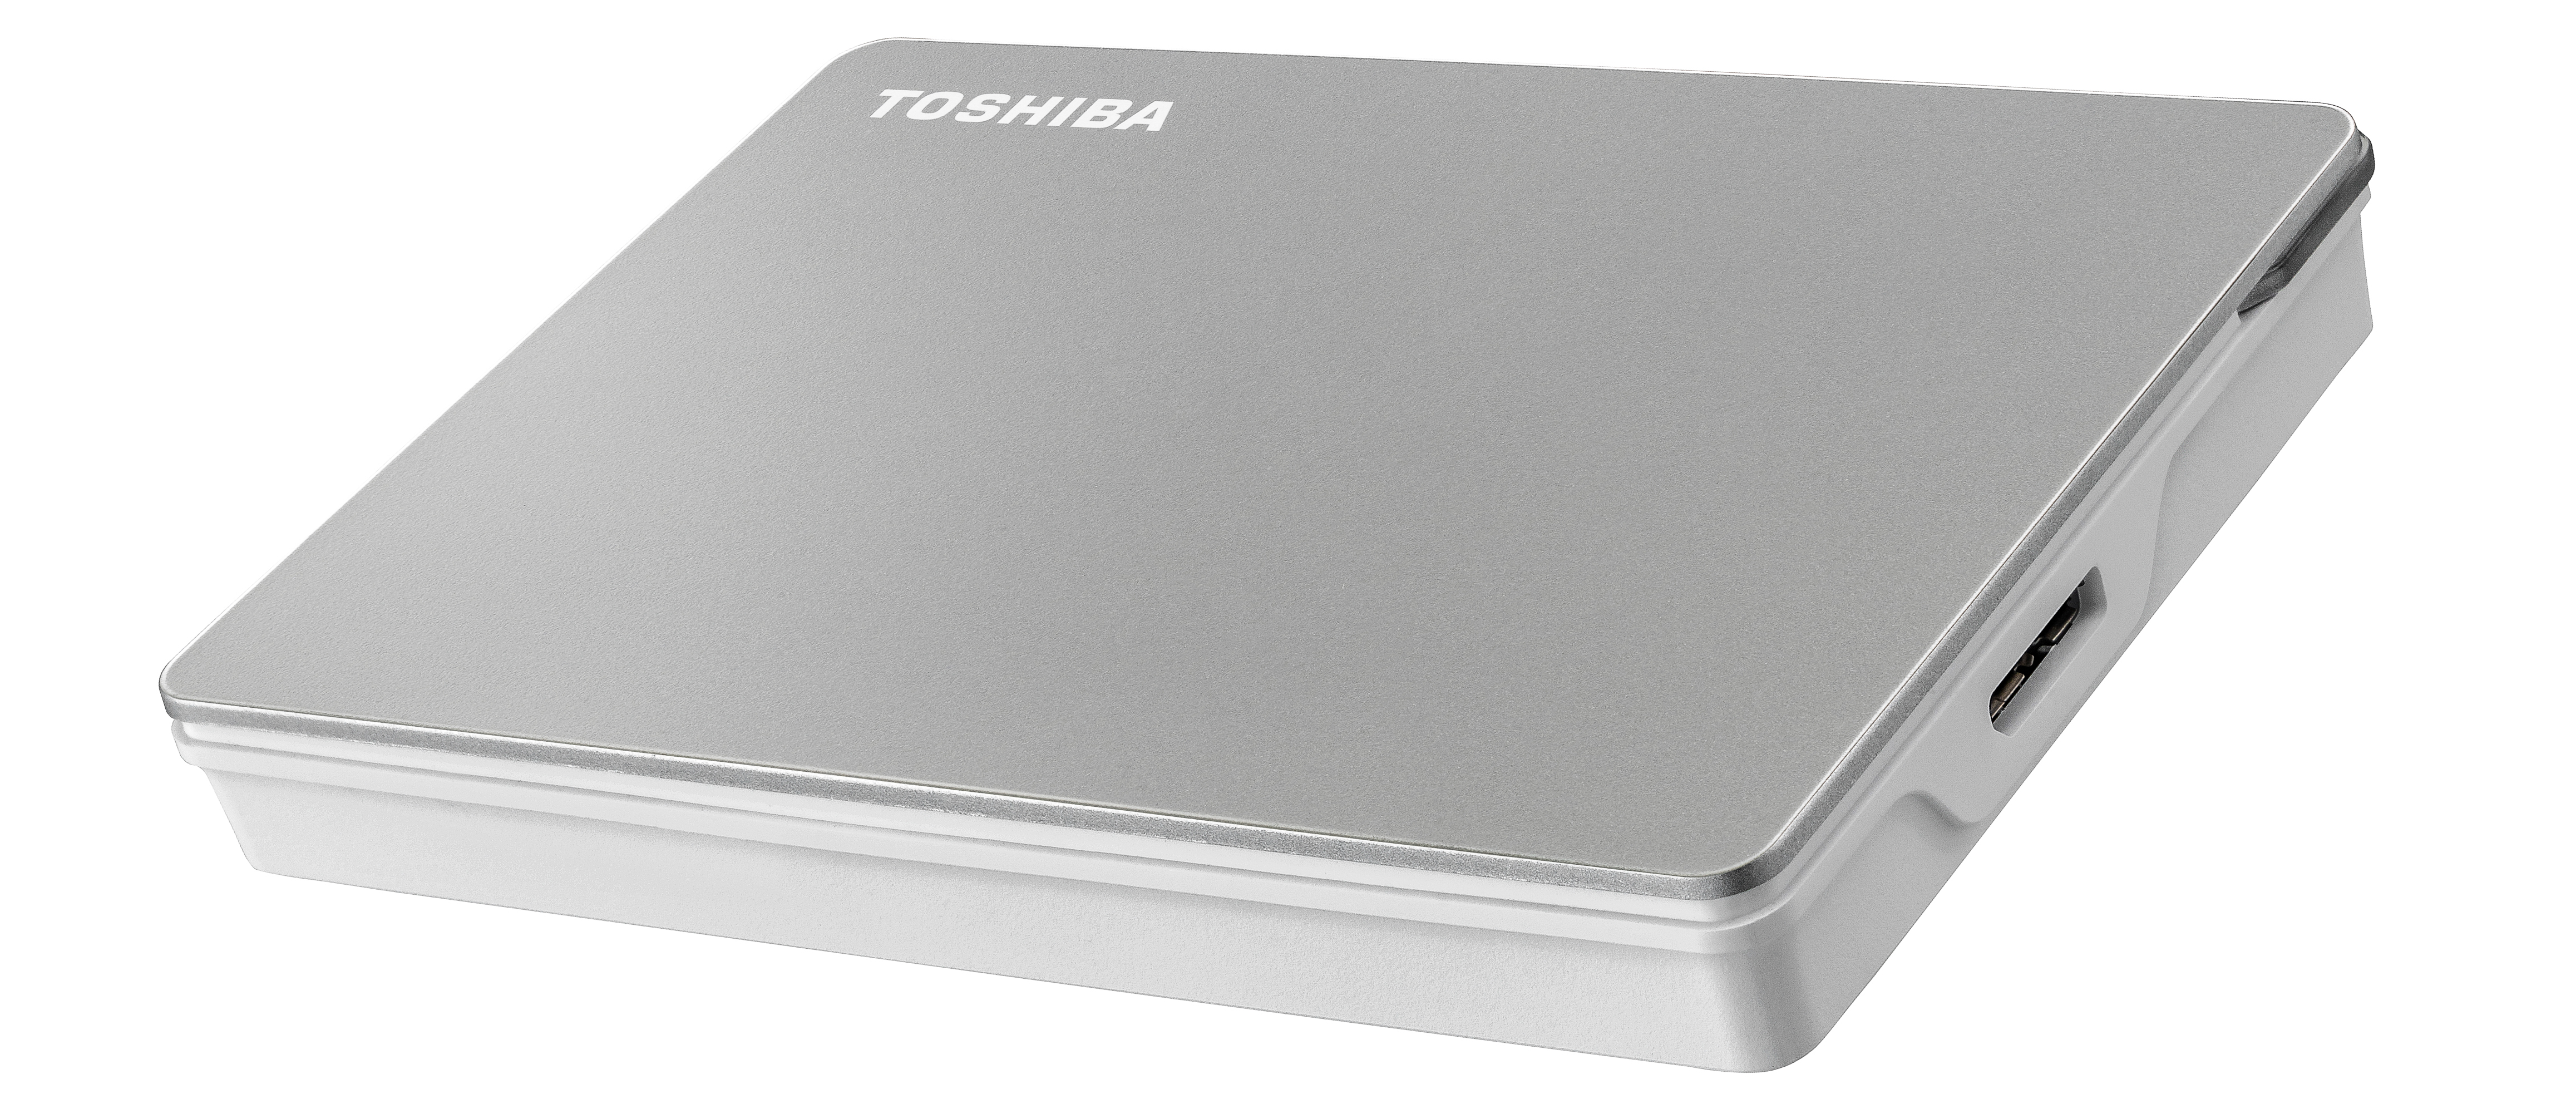 TOSHIBA Canvio Portable Hard Drive 1TB - Disassembly 